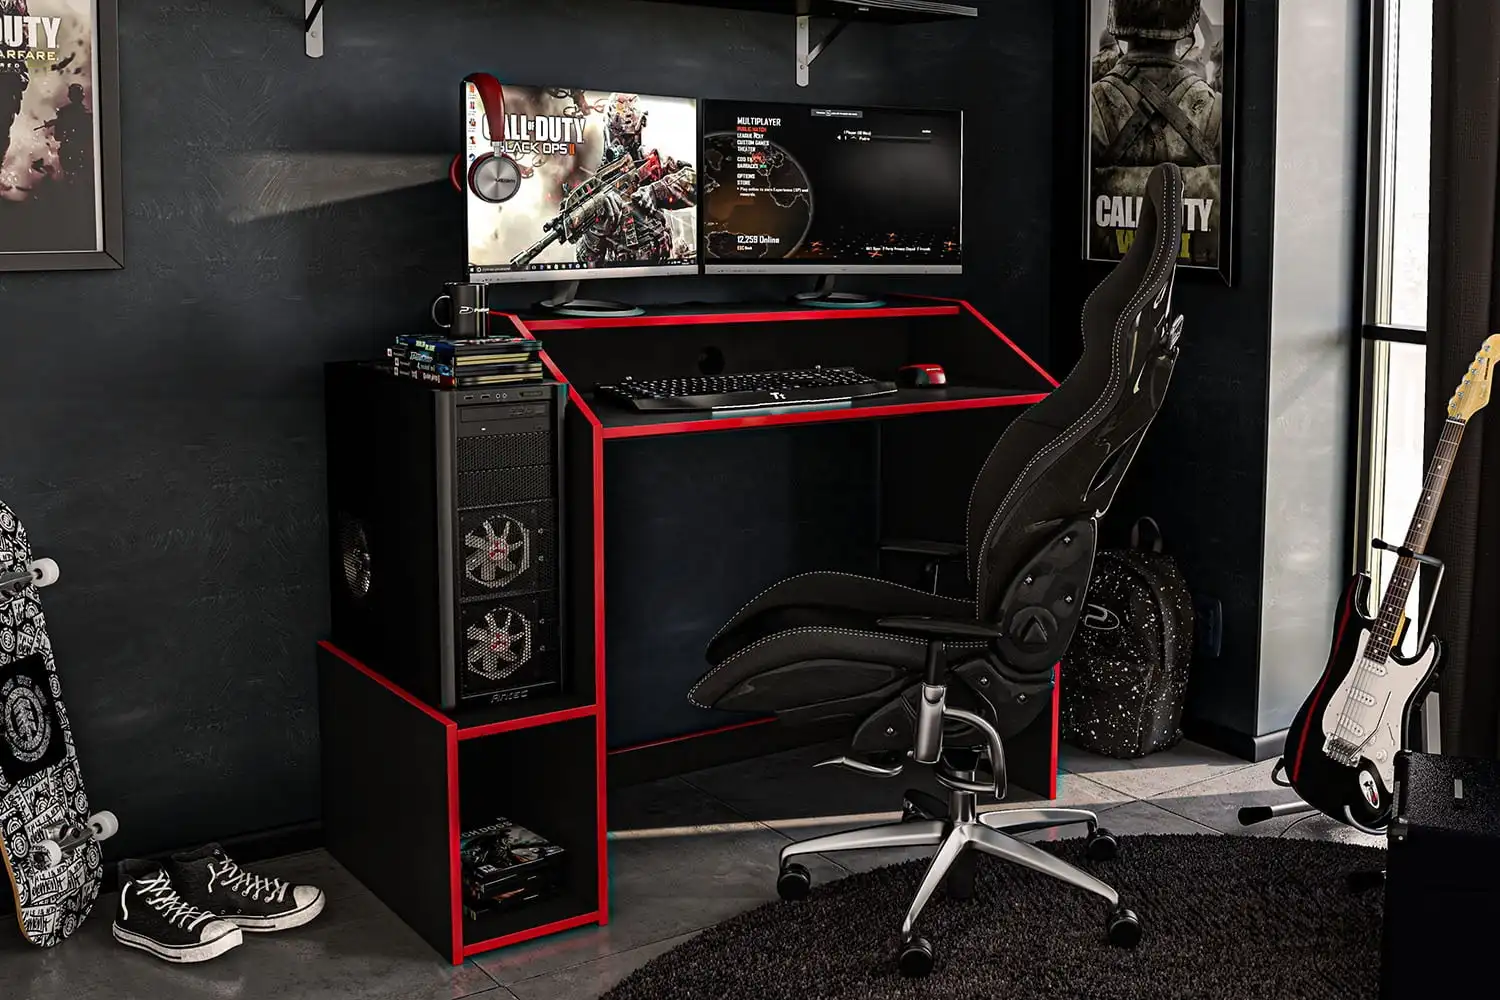 

Деревянный игровой стол Legend Modern, 45 дюймов, с подставкой для монитора, черно-красная отделка, для дома и офиса, игровой компьютерный письменный стол